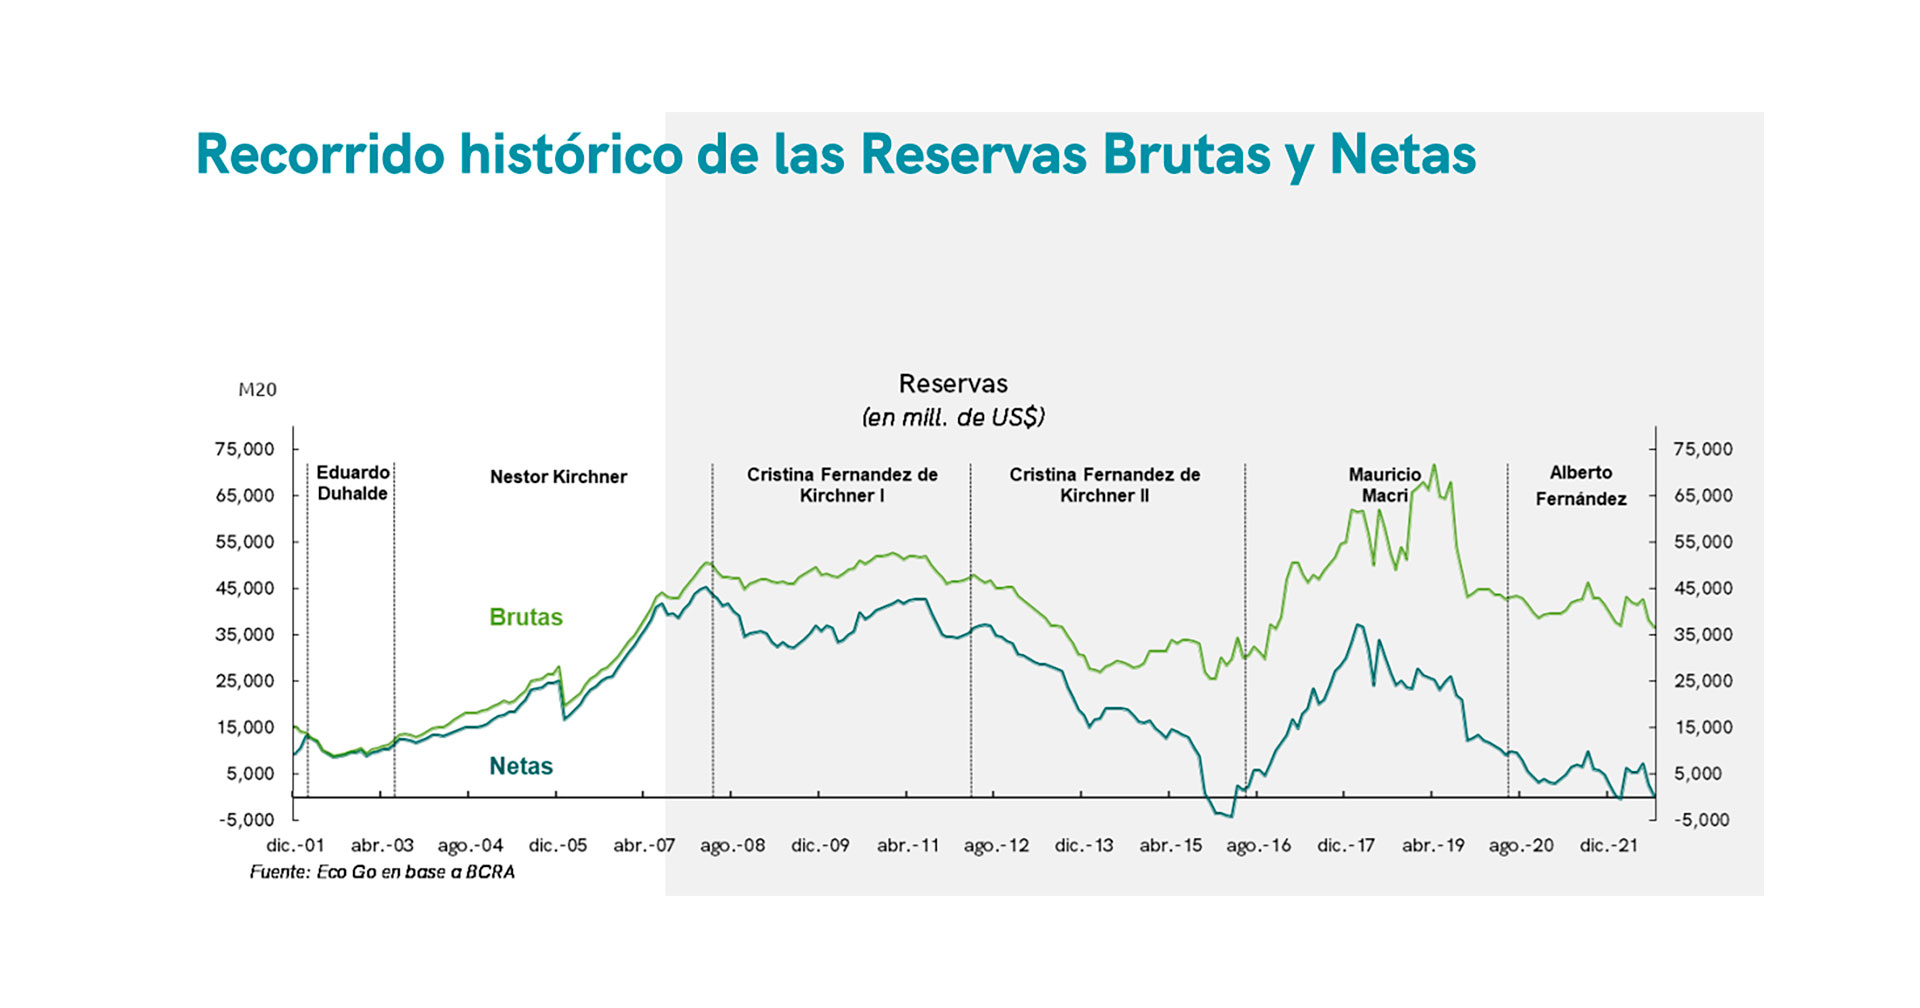 El gráfico de Eco Go muestra la evolución de reservas brutas y netas en los últimos 20 años